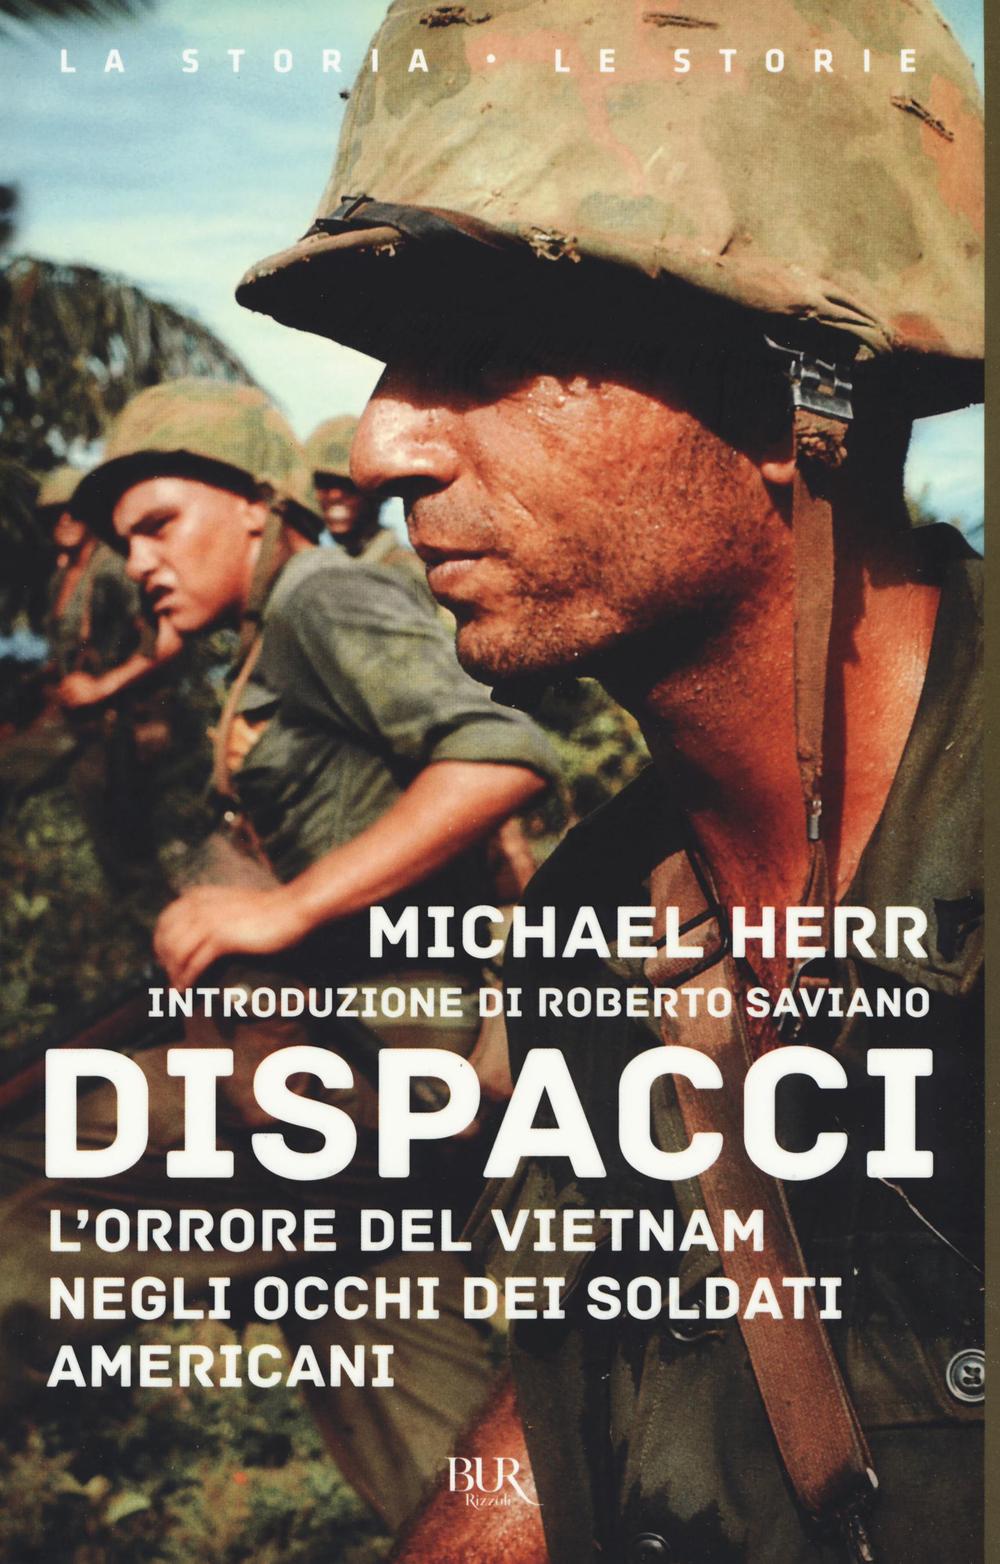 Dispacci. L'orrore del Vietnam. Negli occhi dei soldati americani.